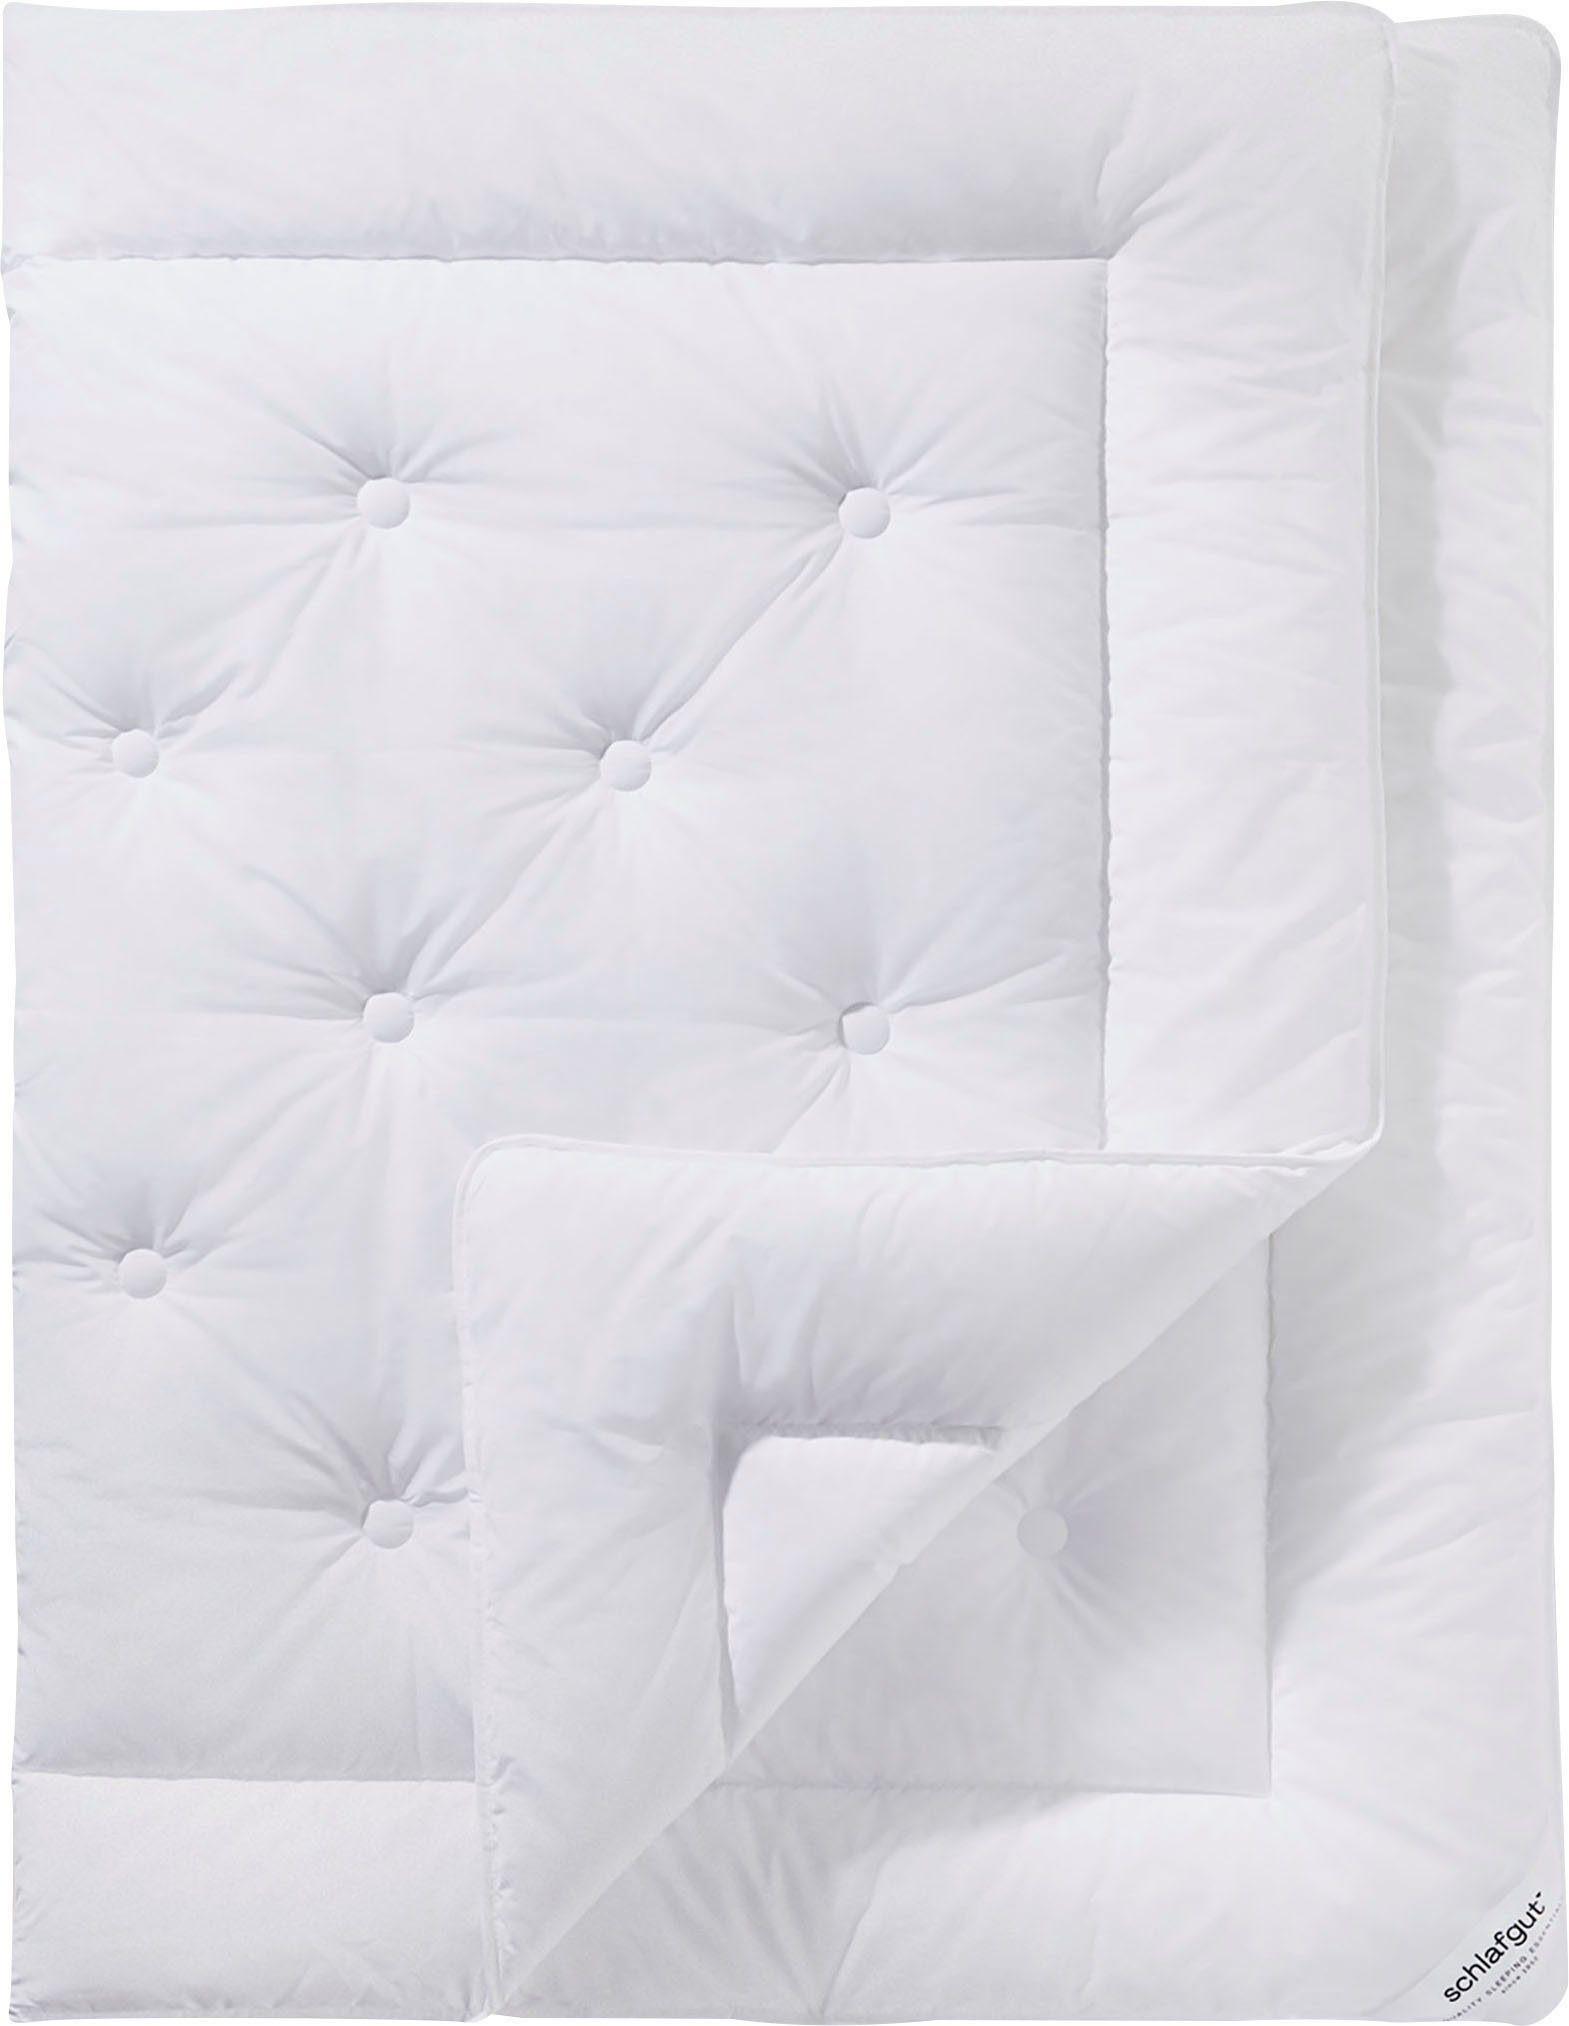 Microfaserbettdecke, Pure, Schlafgut, Bettdecke in 135x200 cm und weiteren Größen, für Sommer oder Winter